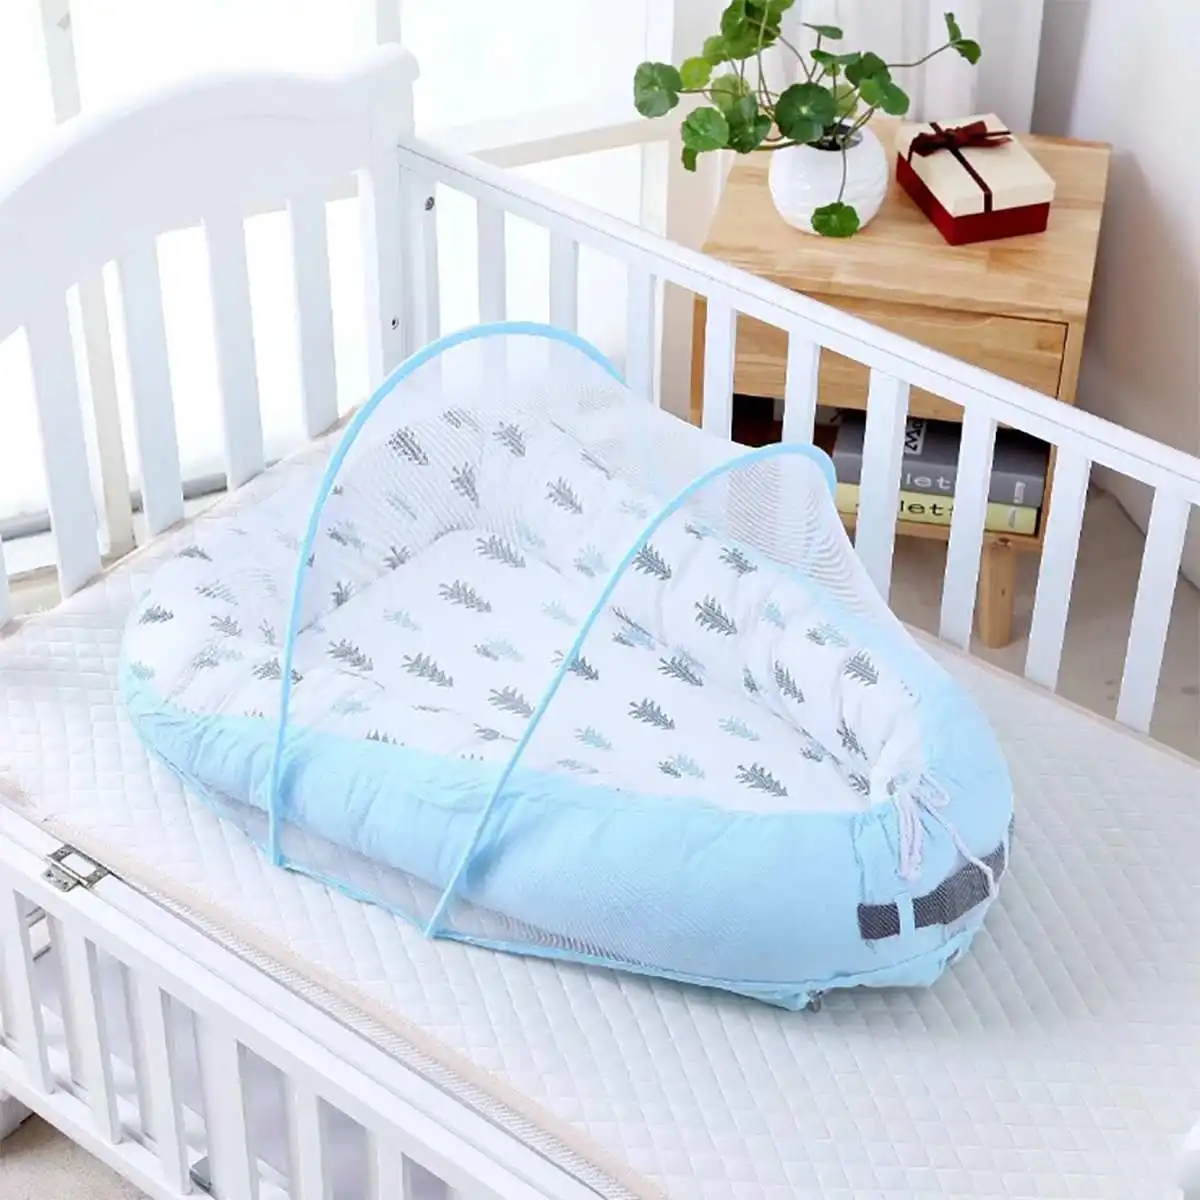 Детская кровать Alcofa Nest портативная кроватка для путешествий детская хлопковая Колыбель переносная люлька для новорожденных люлька бампер - Цвет: Небесно-голубой